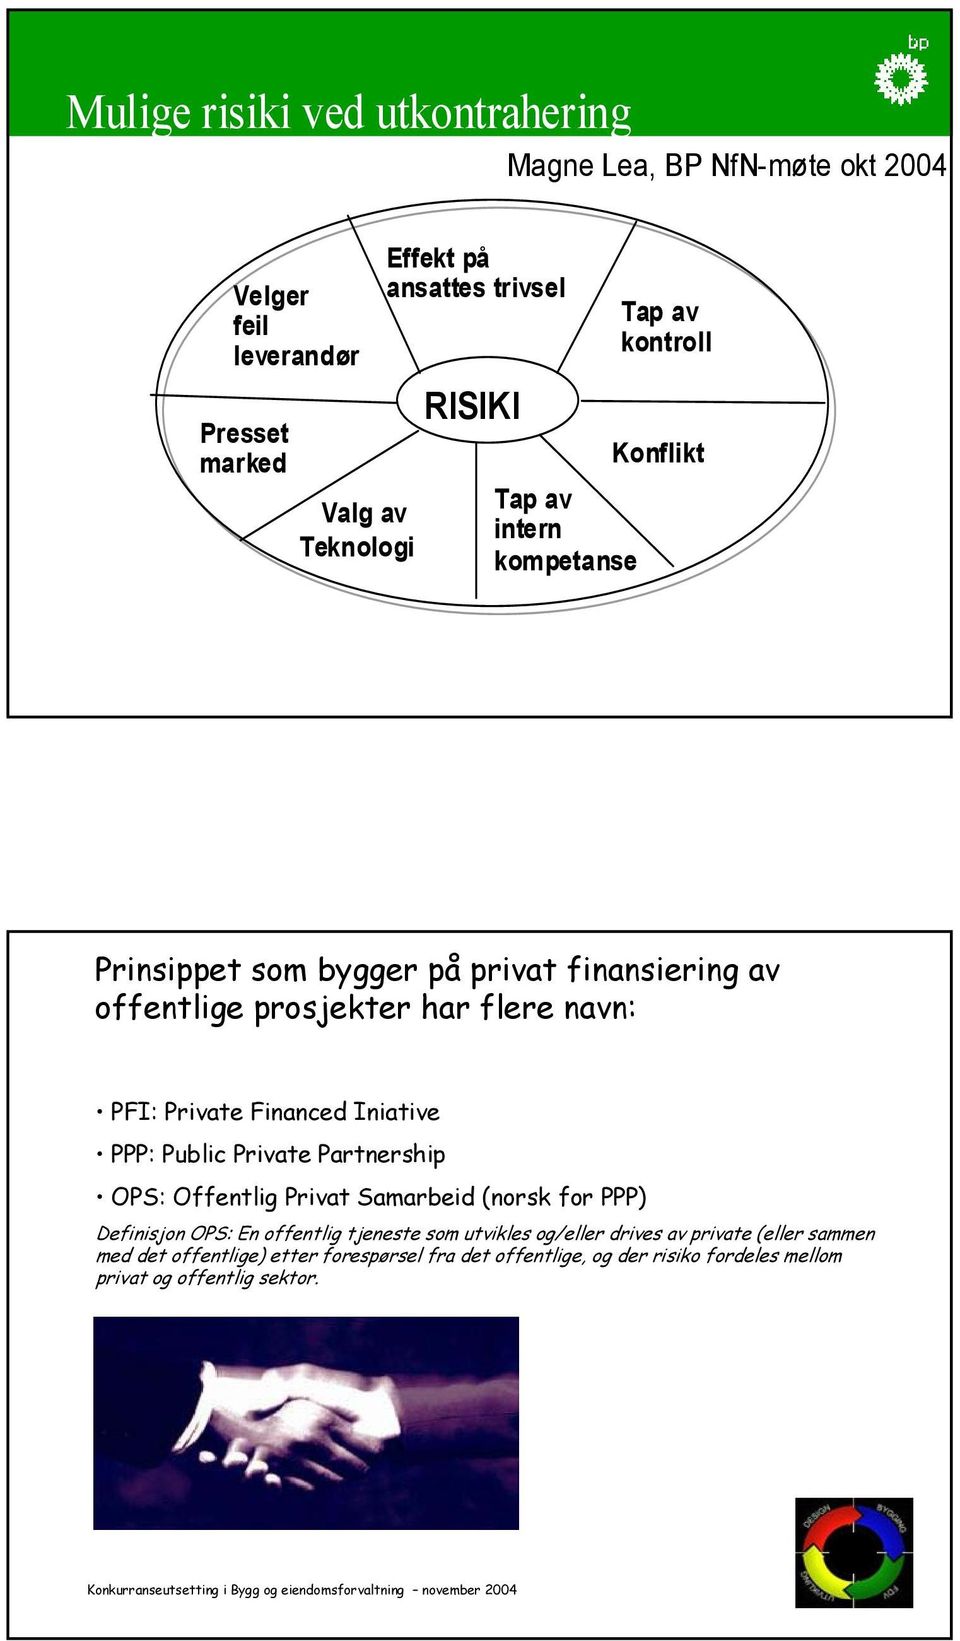 navn: PFI: Private Financed Iniative PPP: Public Private Partnership OPS: Offentlig Privat Samarbeid (norsk for PPP) Definisjon OPS: En offentlig tjeneste